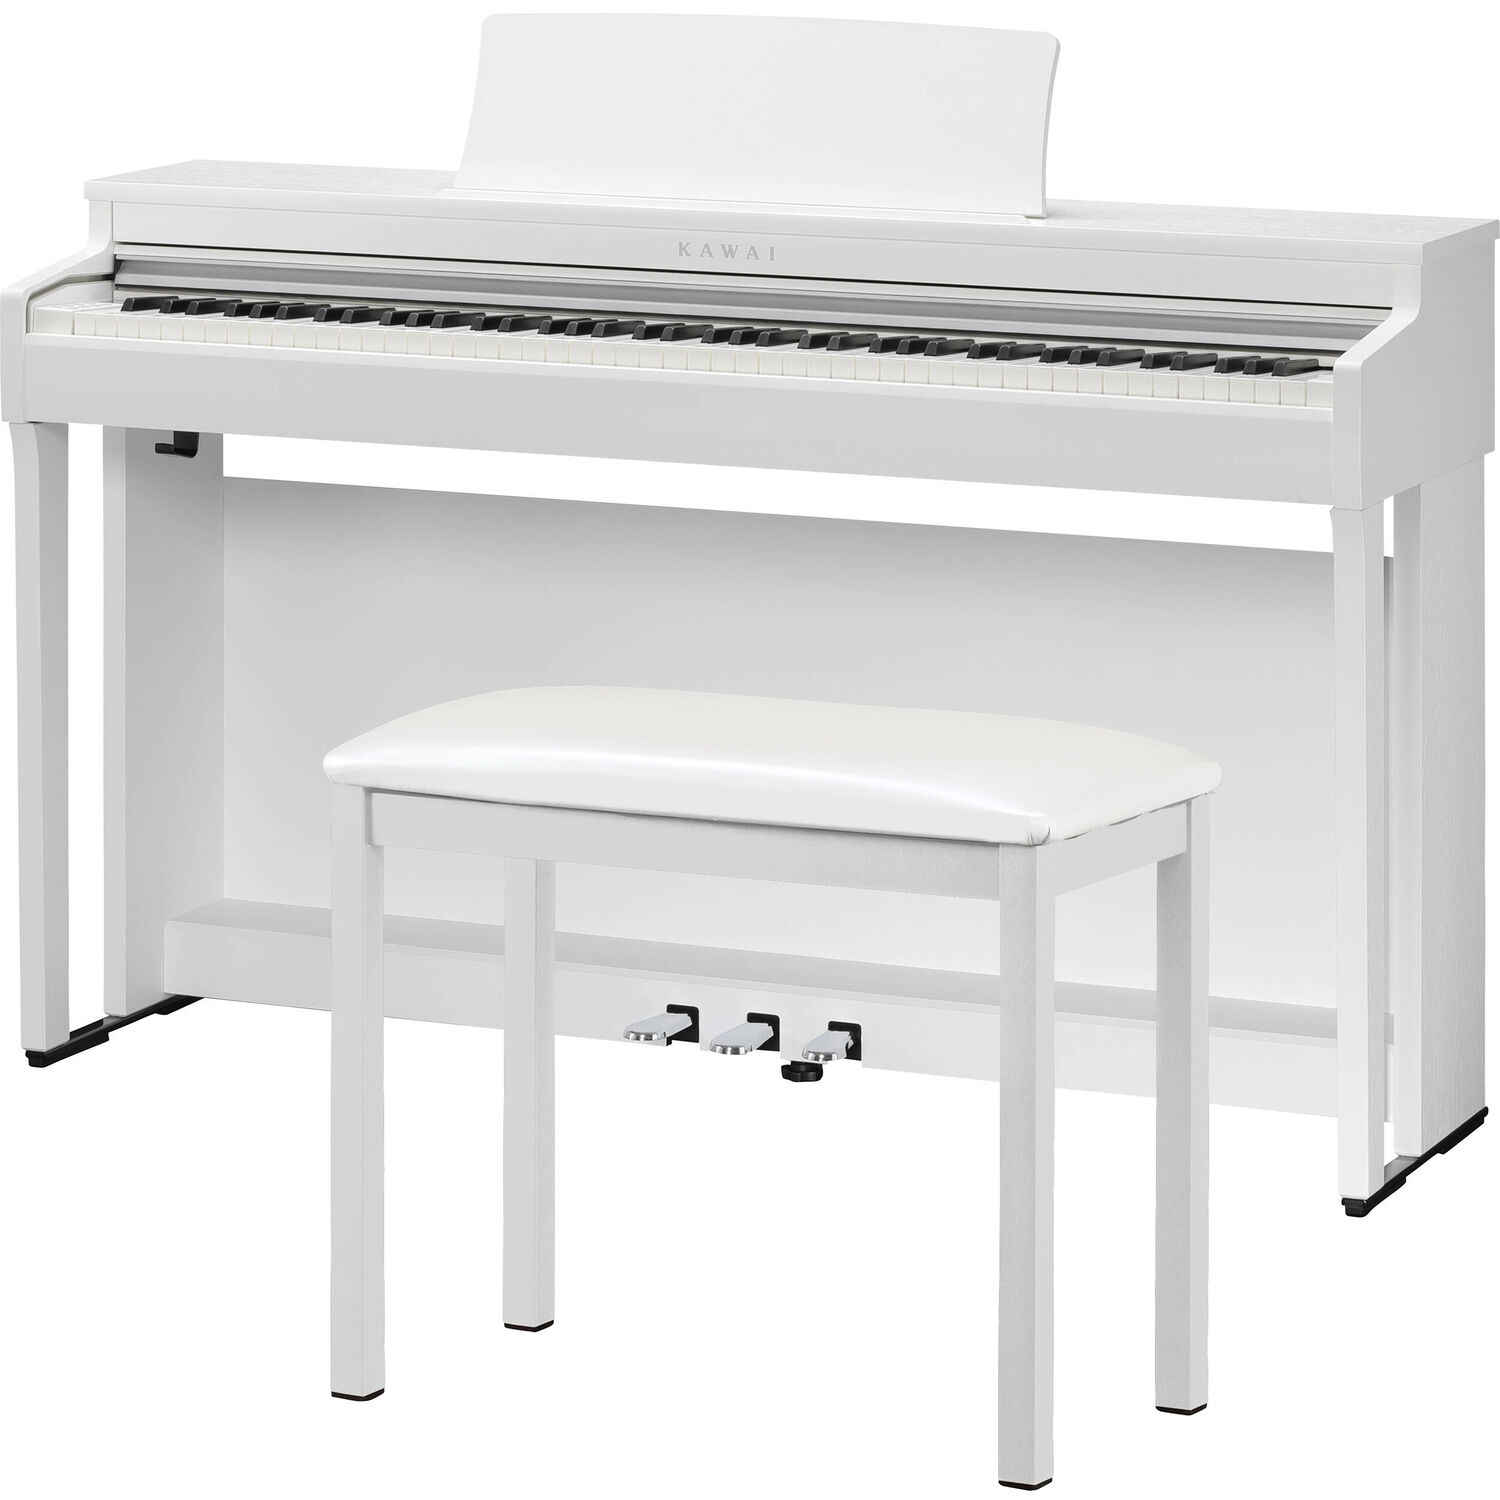 Piano Digital Kawai Cn201 con Banco a Juego Premium Satin White